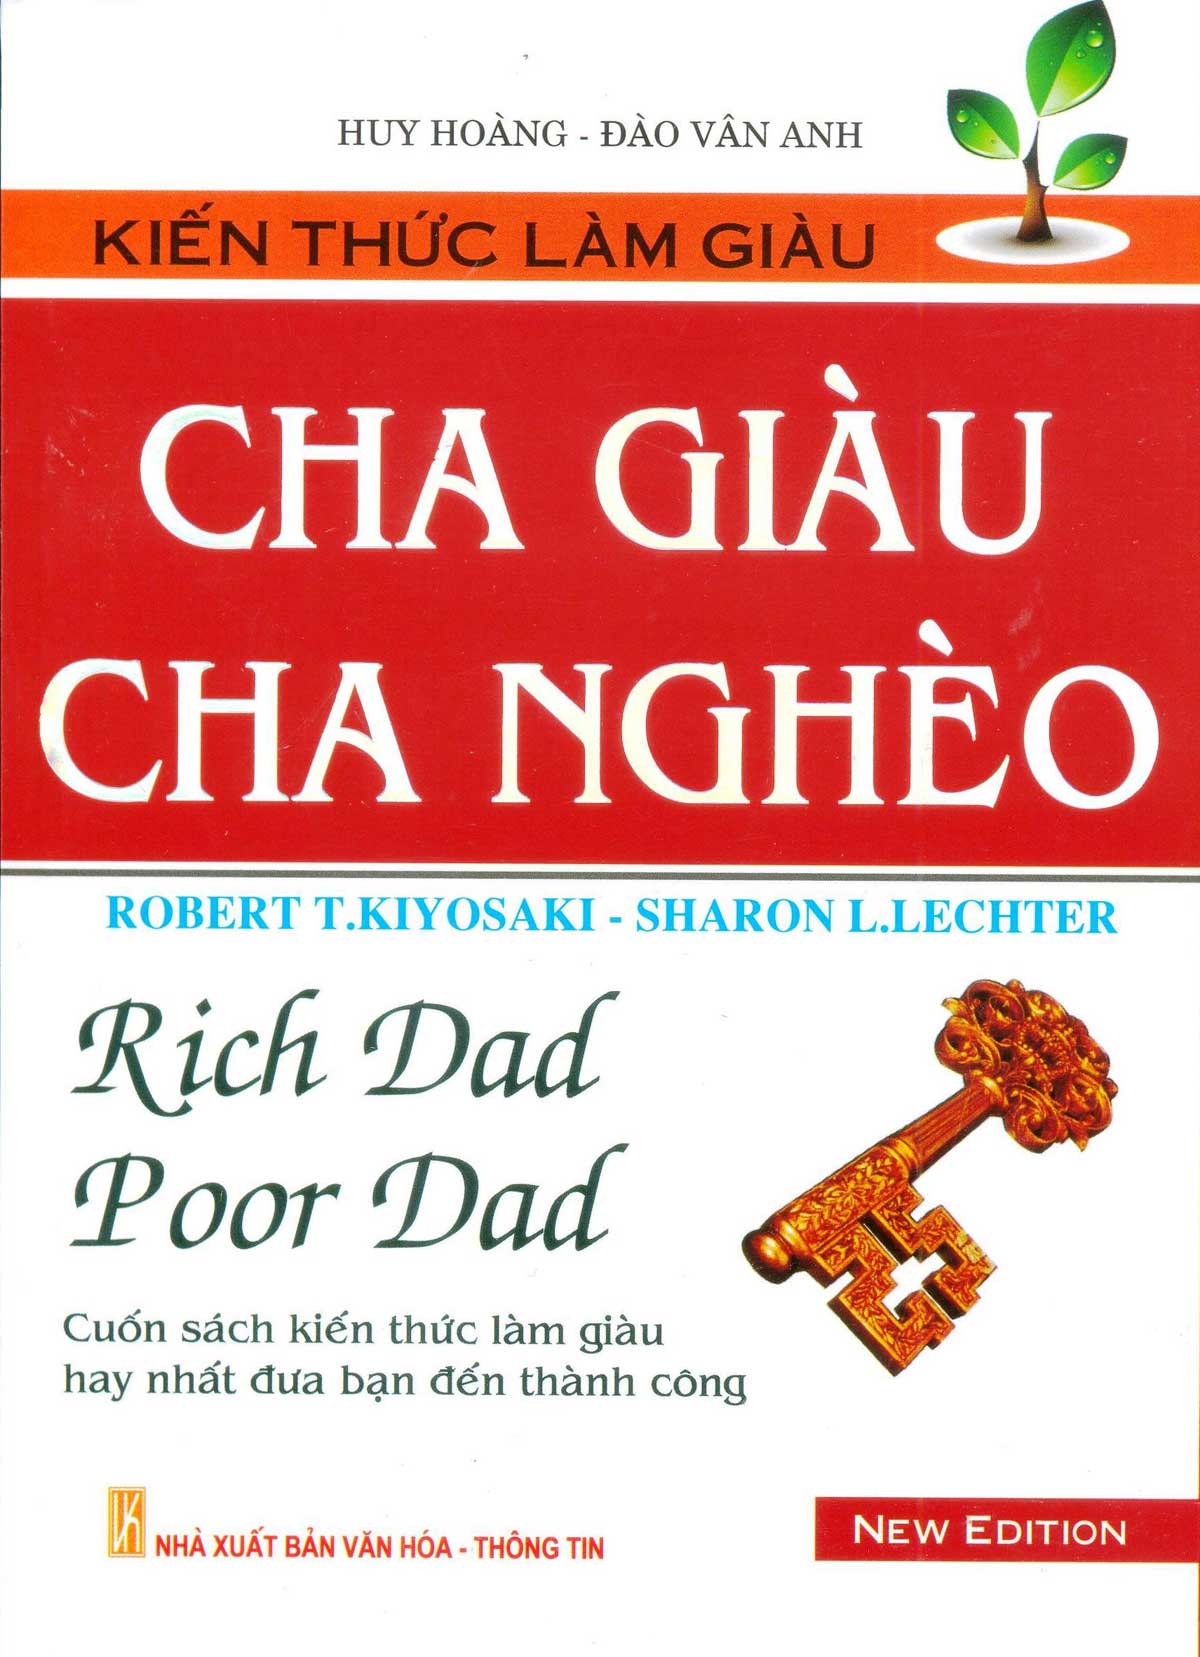 CUON SACH CHA GIAU CHA NGHEO - 【Review Sách】Cha giàu cha nghèo | Tải Full PDF